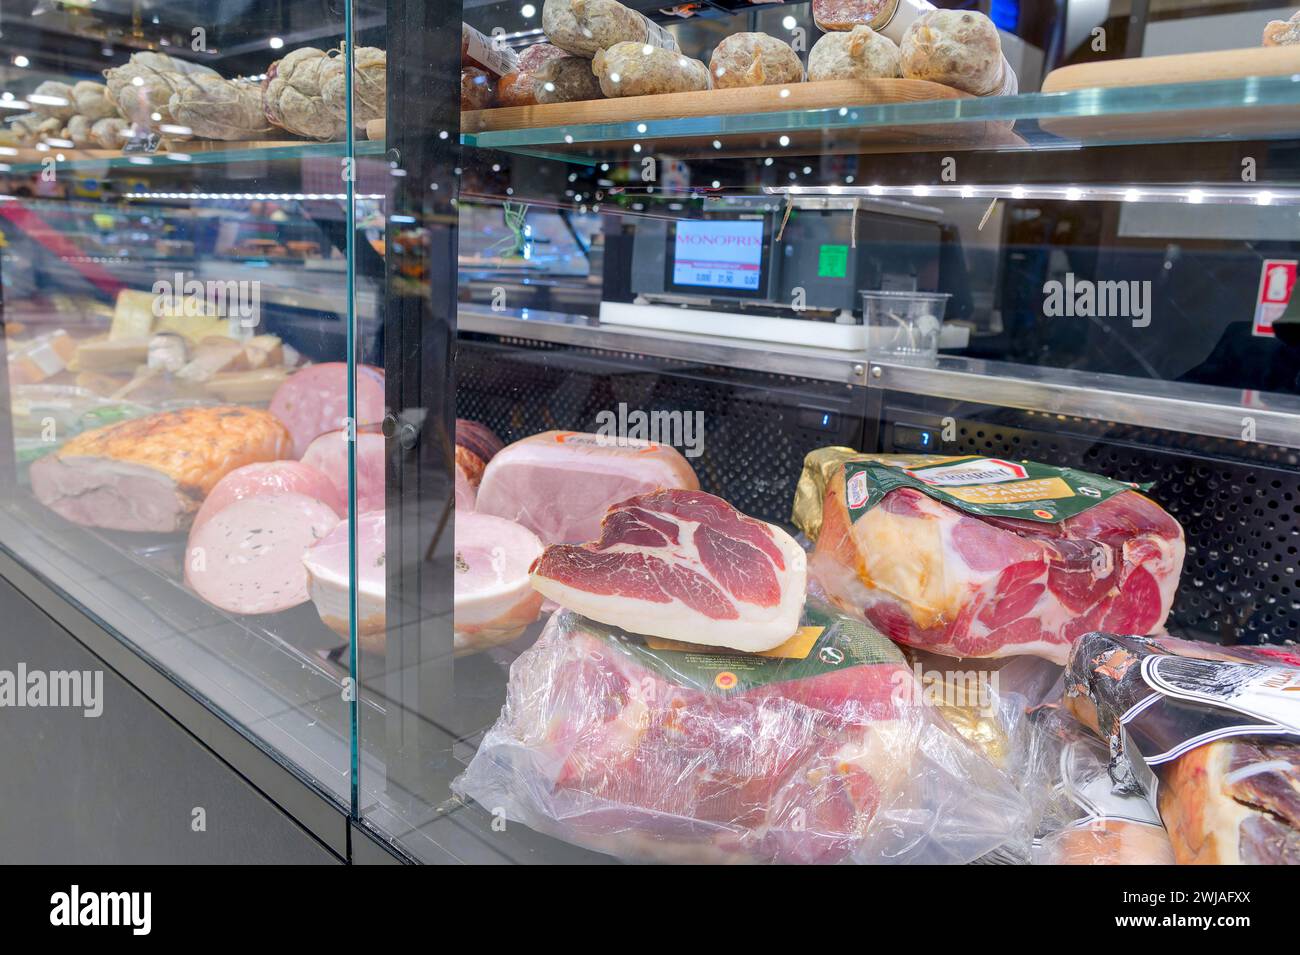 Département boucherie et charcuterie d'un supermarché Monoprix dans le centre commercial Cap 3000 à Saint-Laurent-du-Var (sud-est de la France). Compt Banque D'Images